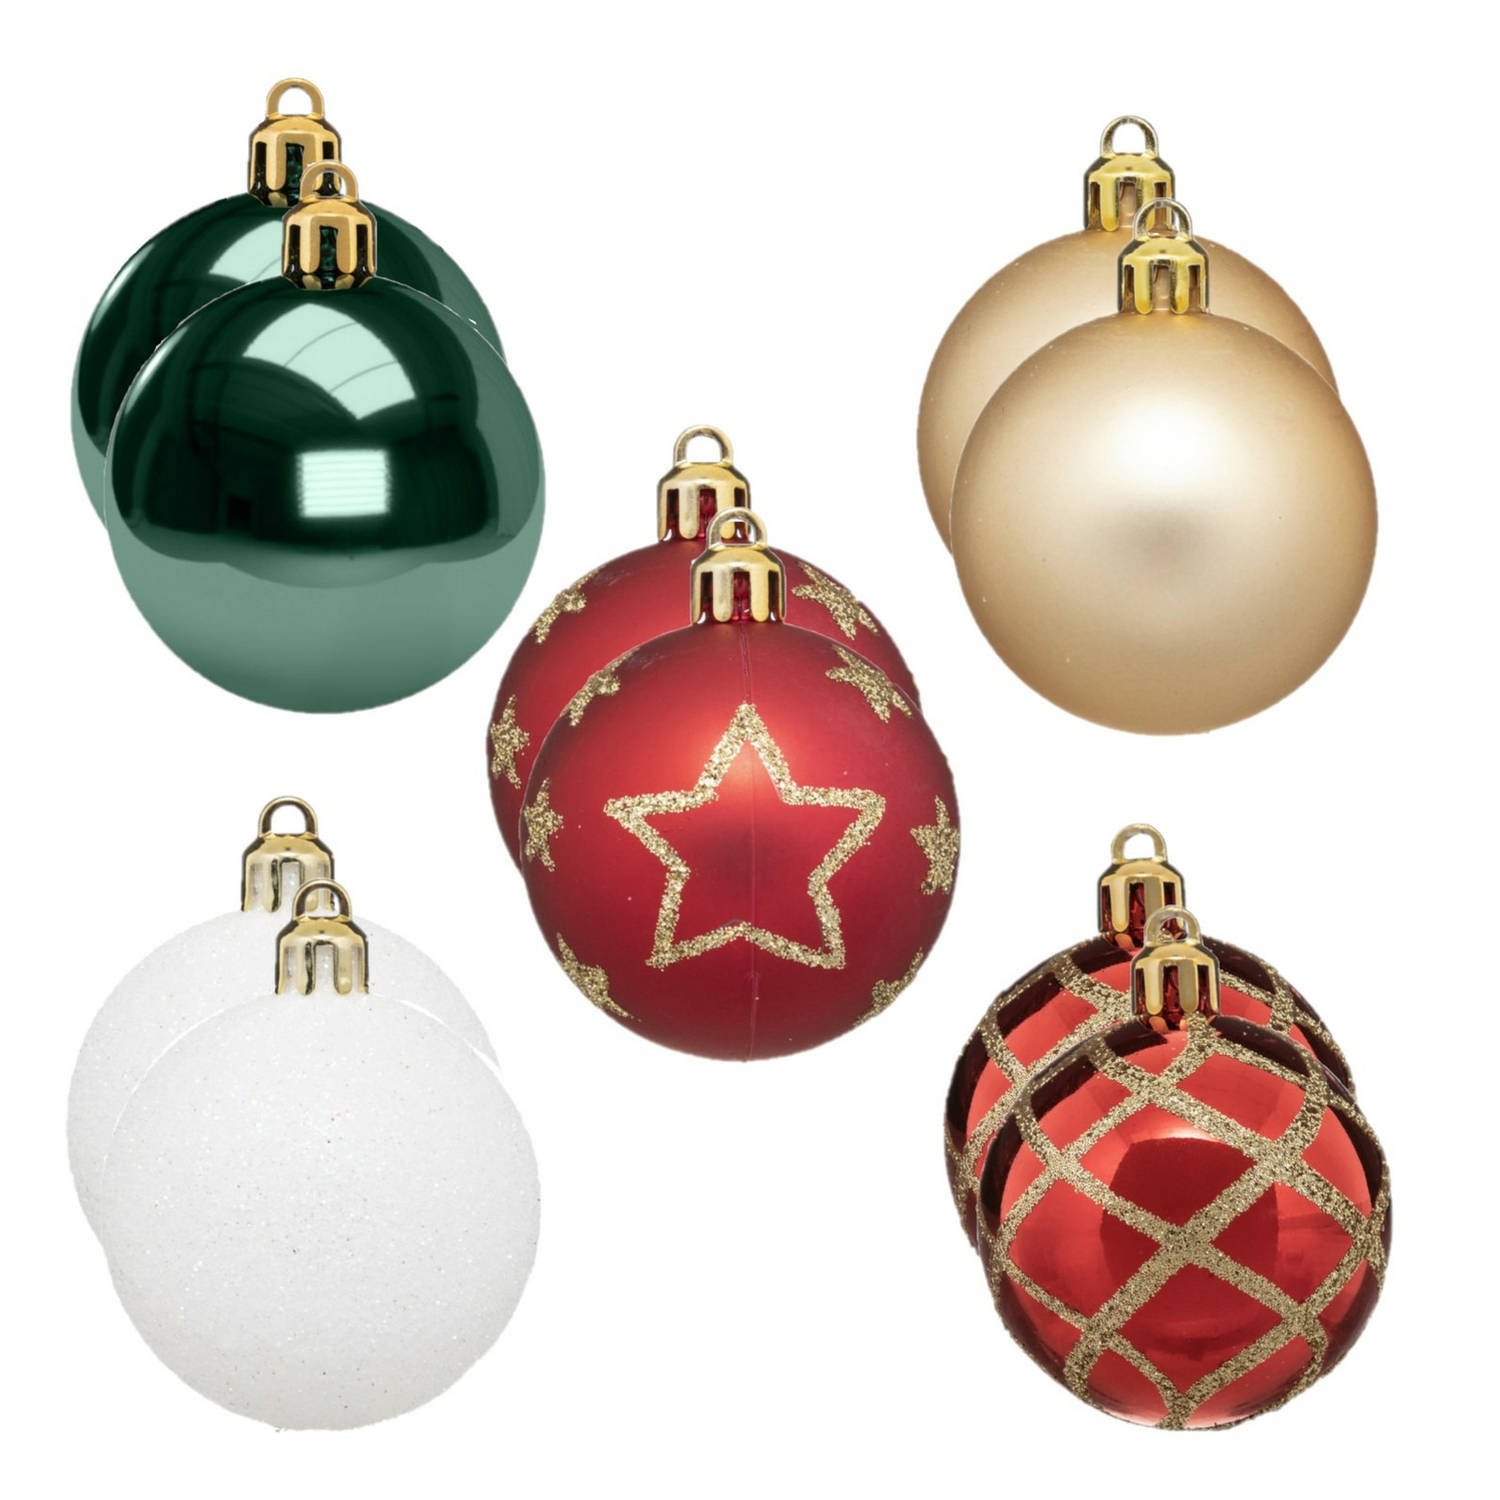 30x stuks kerstballen mix wit-rood-groen-champagne gedecoreerd kunststof 5 cm Kerstbal